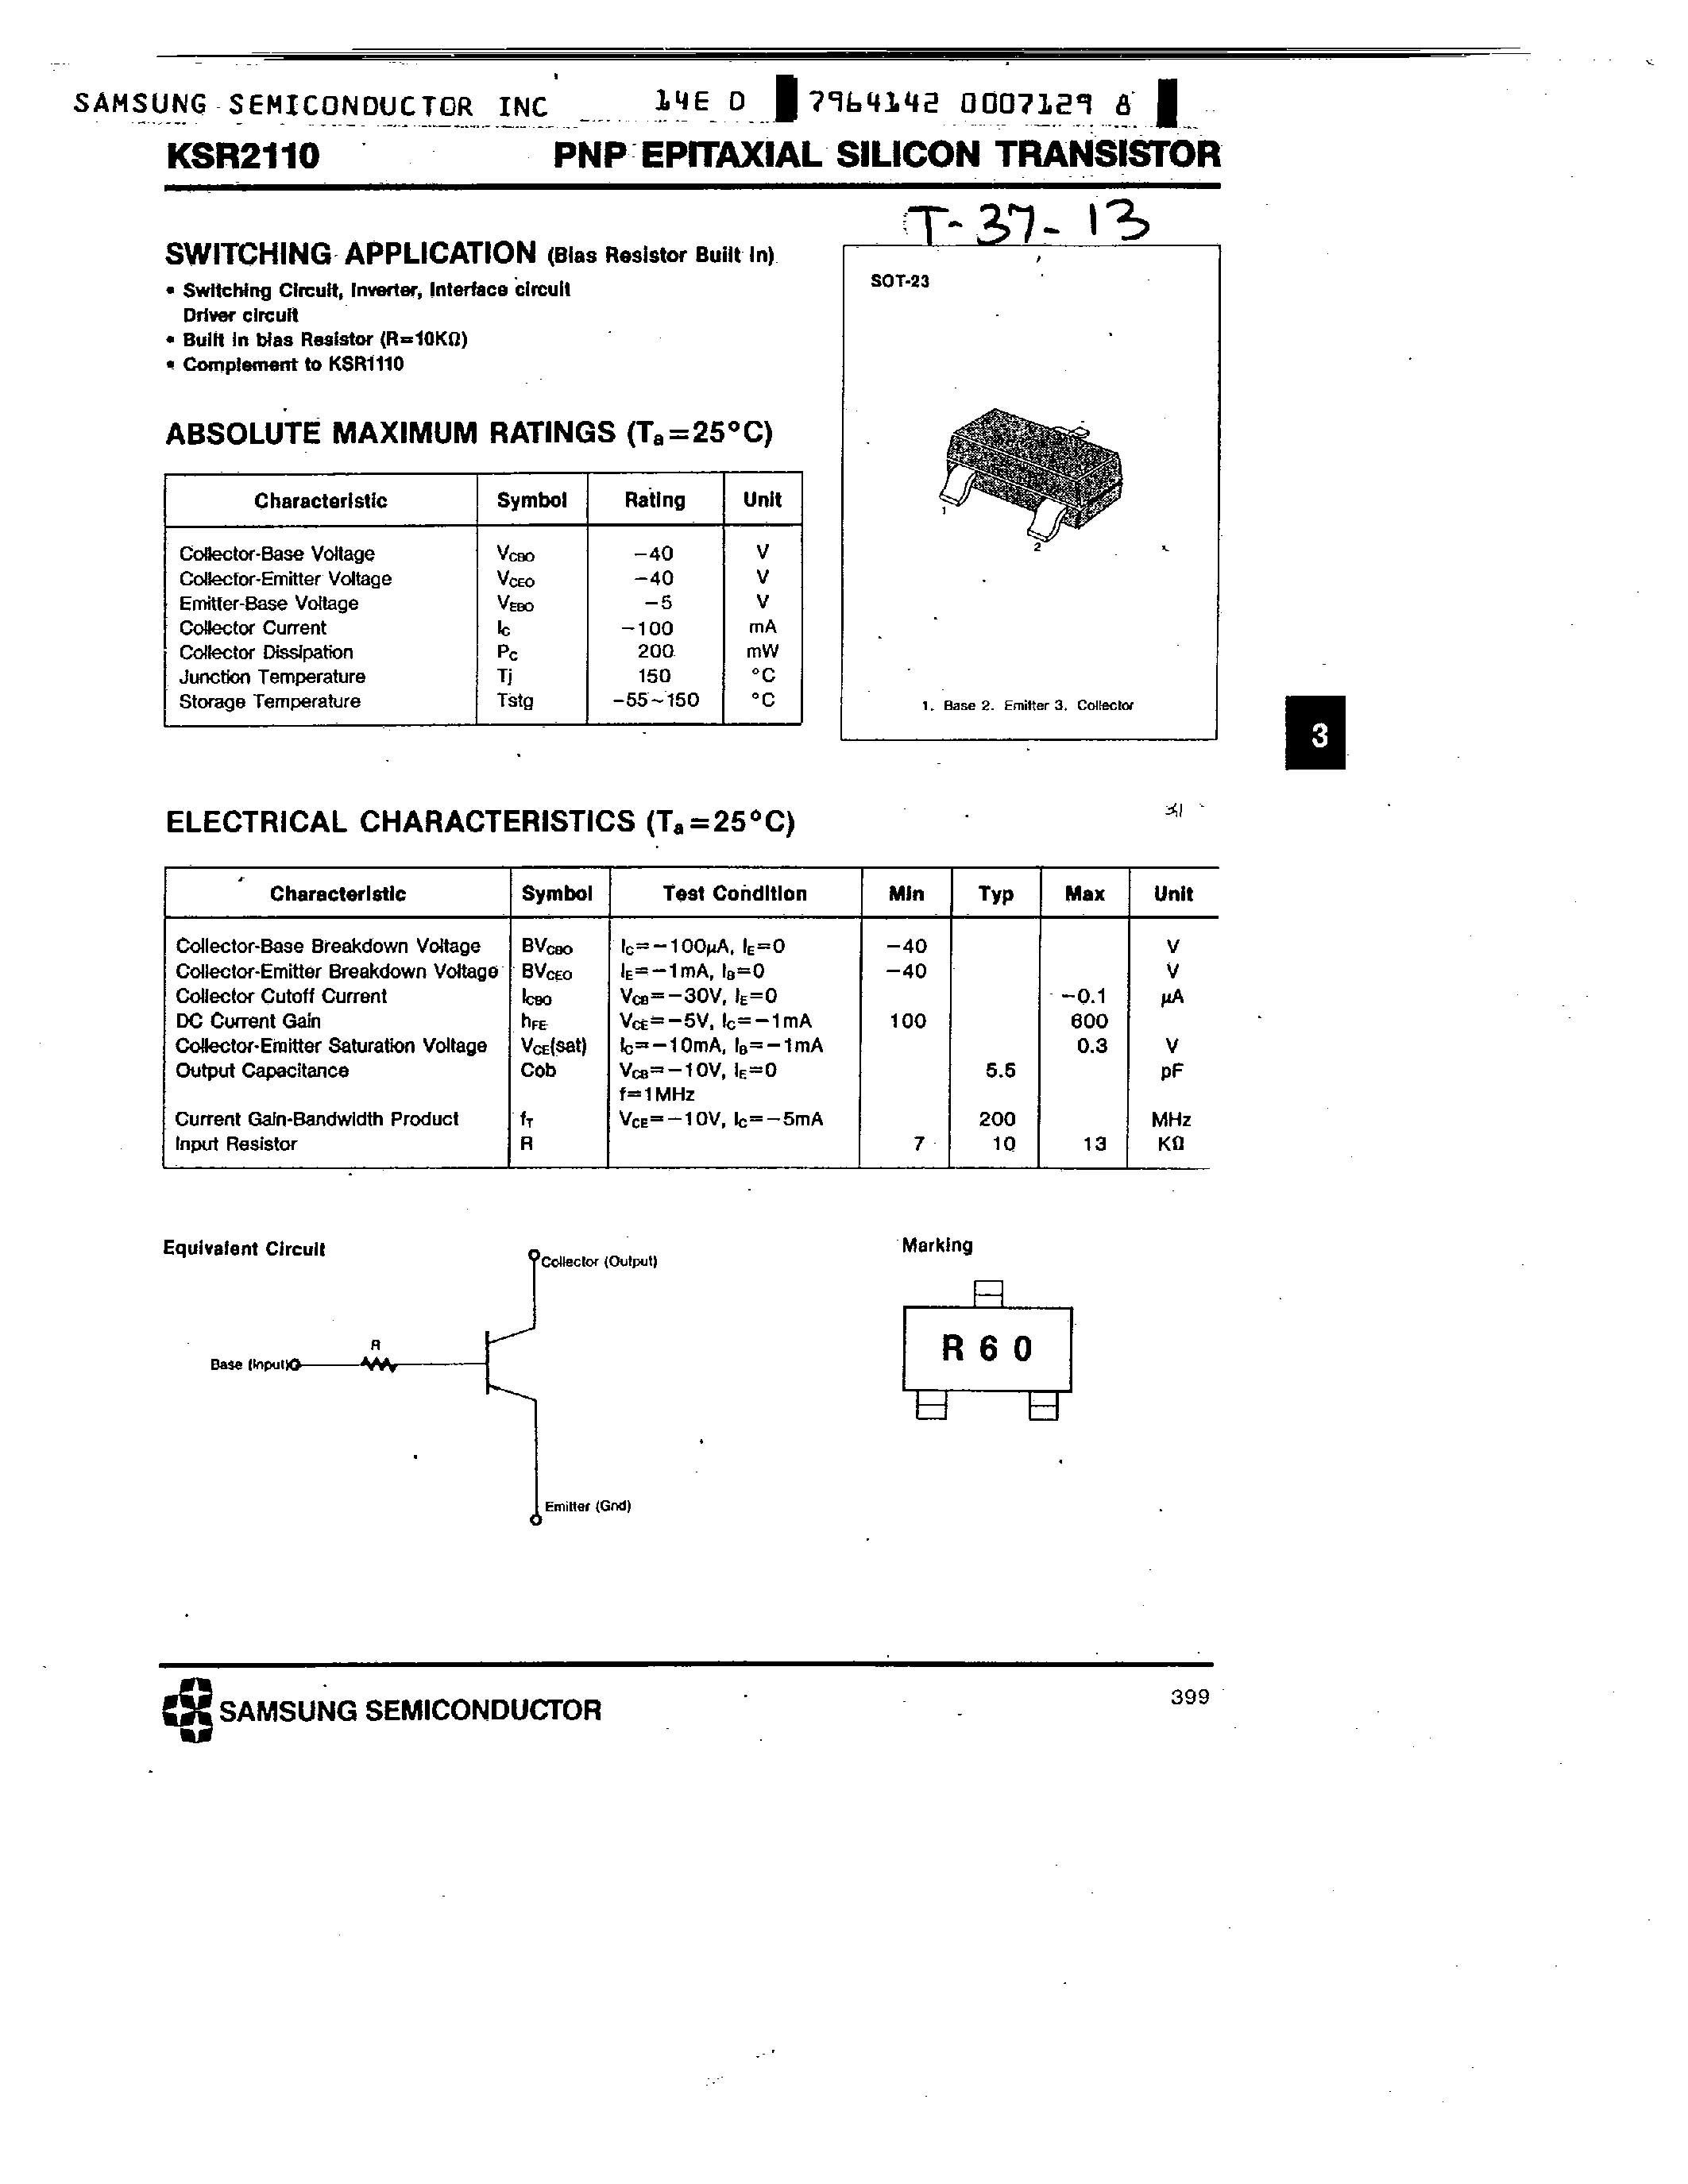 Datasheet KSR2110 - PNP (SWITCHING APPLICATION) page 1